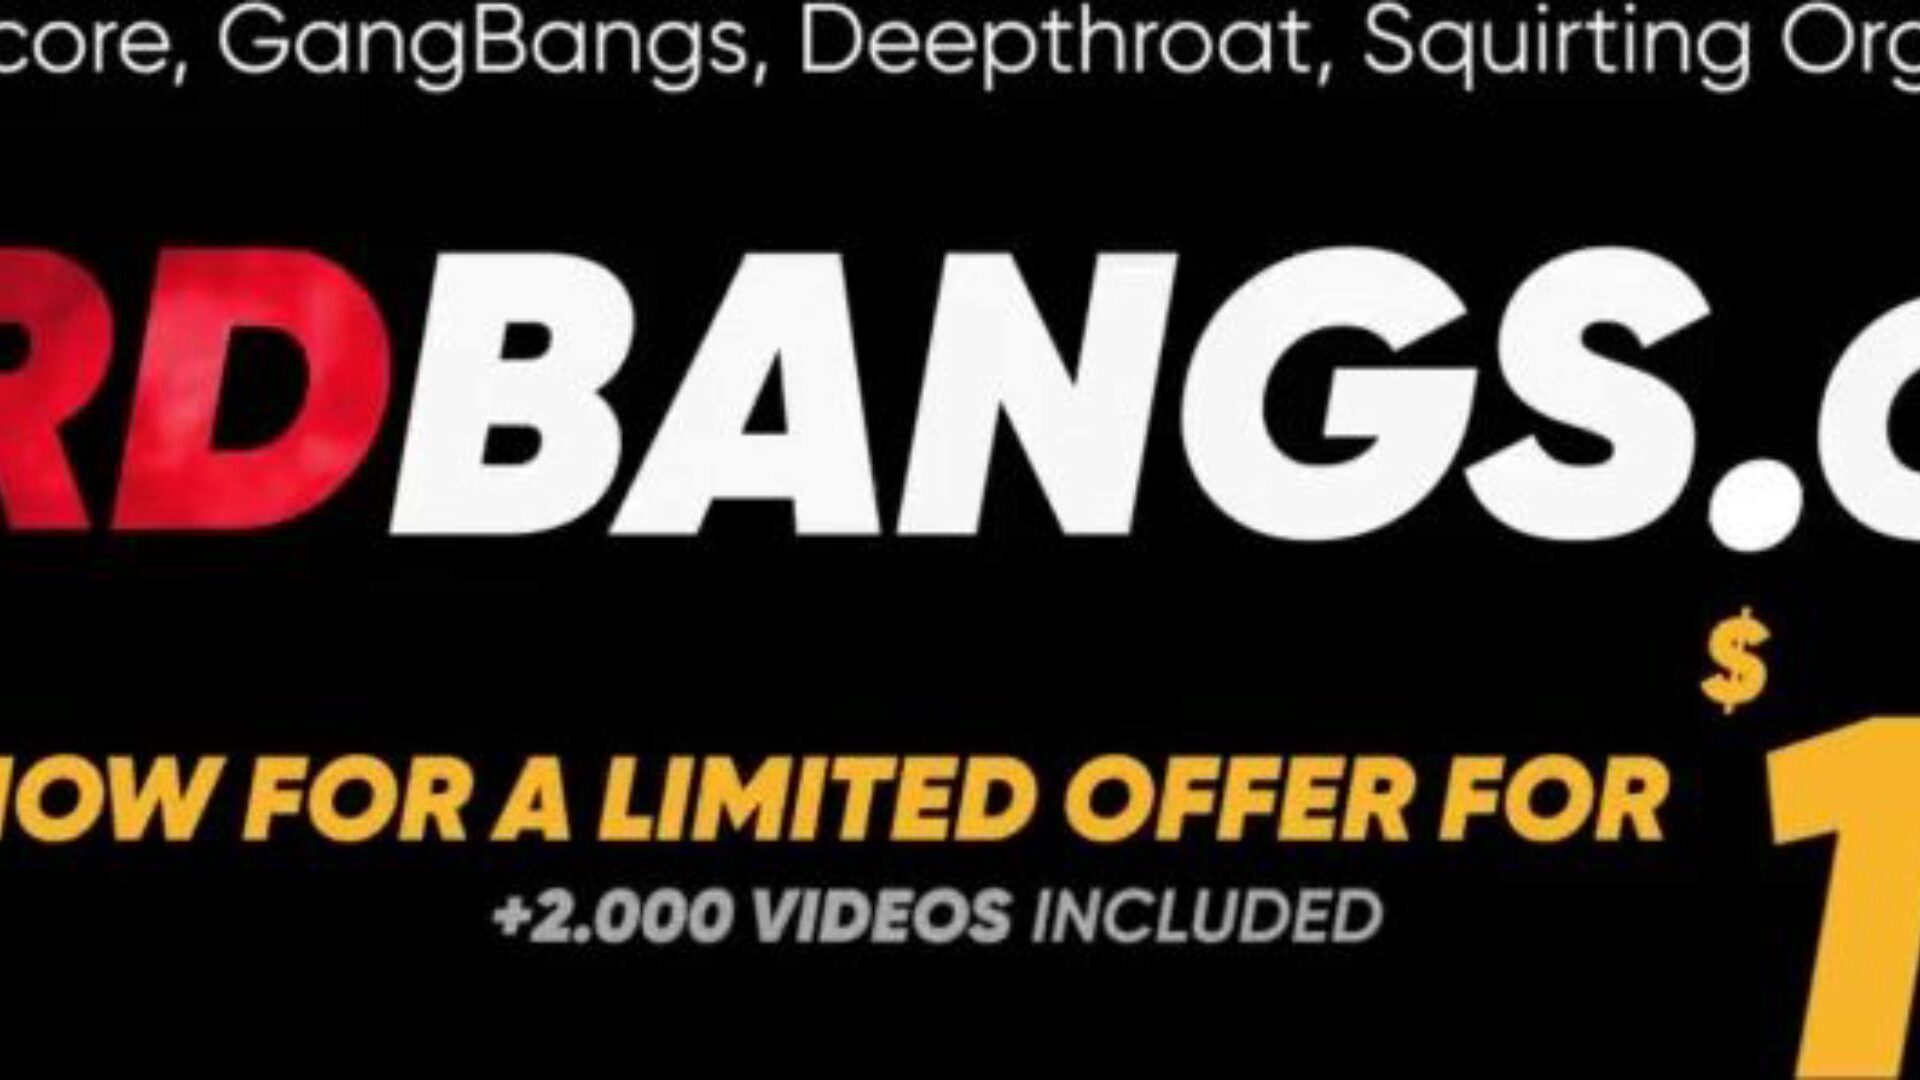 4 on 1 Hard GangBang | Double Blowjob + Double Penetration